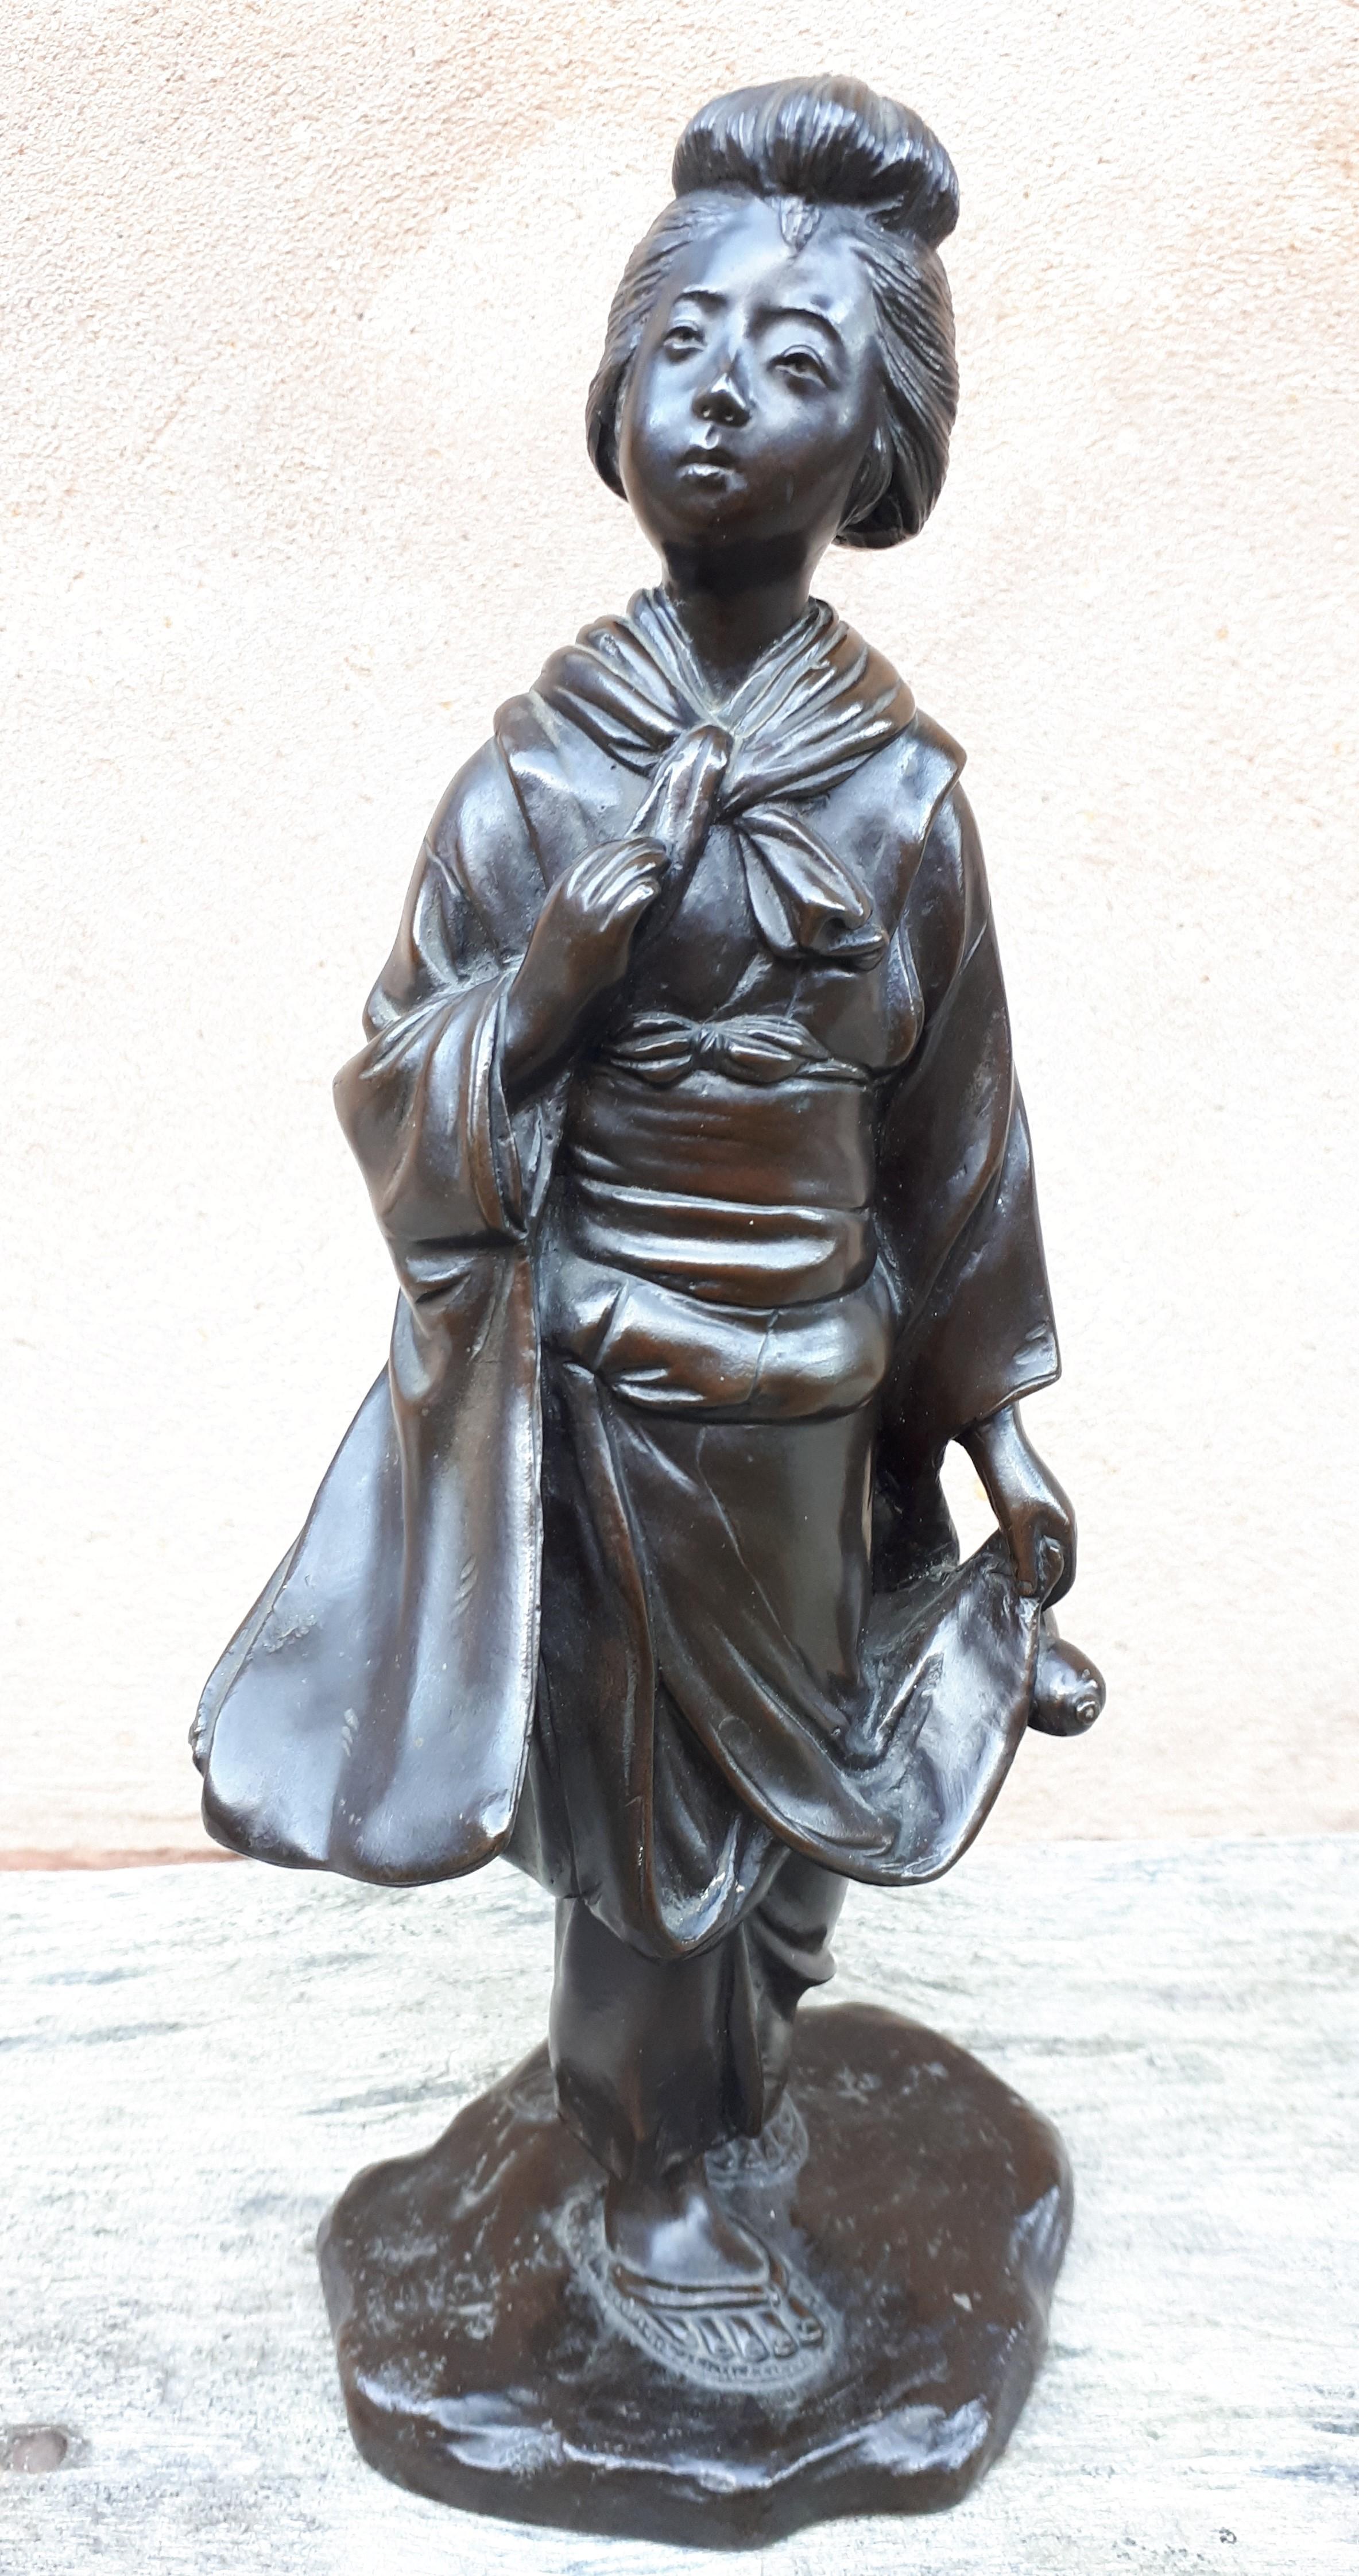 Hervorragender Okimono aus Bronze mit dunkelbrauner Patina, der eine Dame darstellt, die in ihrer linken Hand einen Kürbis hält.
Signiert Seiya Sei (hergestellt von Seiya). Genryusai Seiya war ein Meister des Kunsthandwerks, der sich auf hochwertige